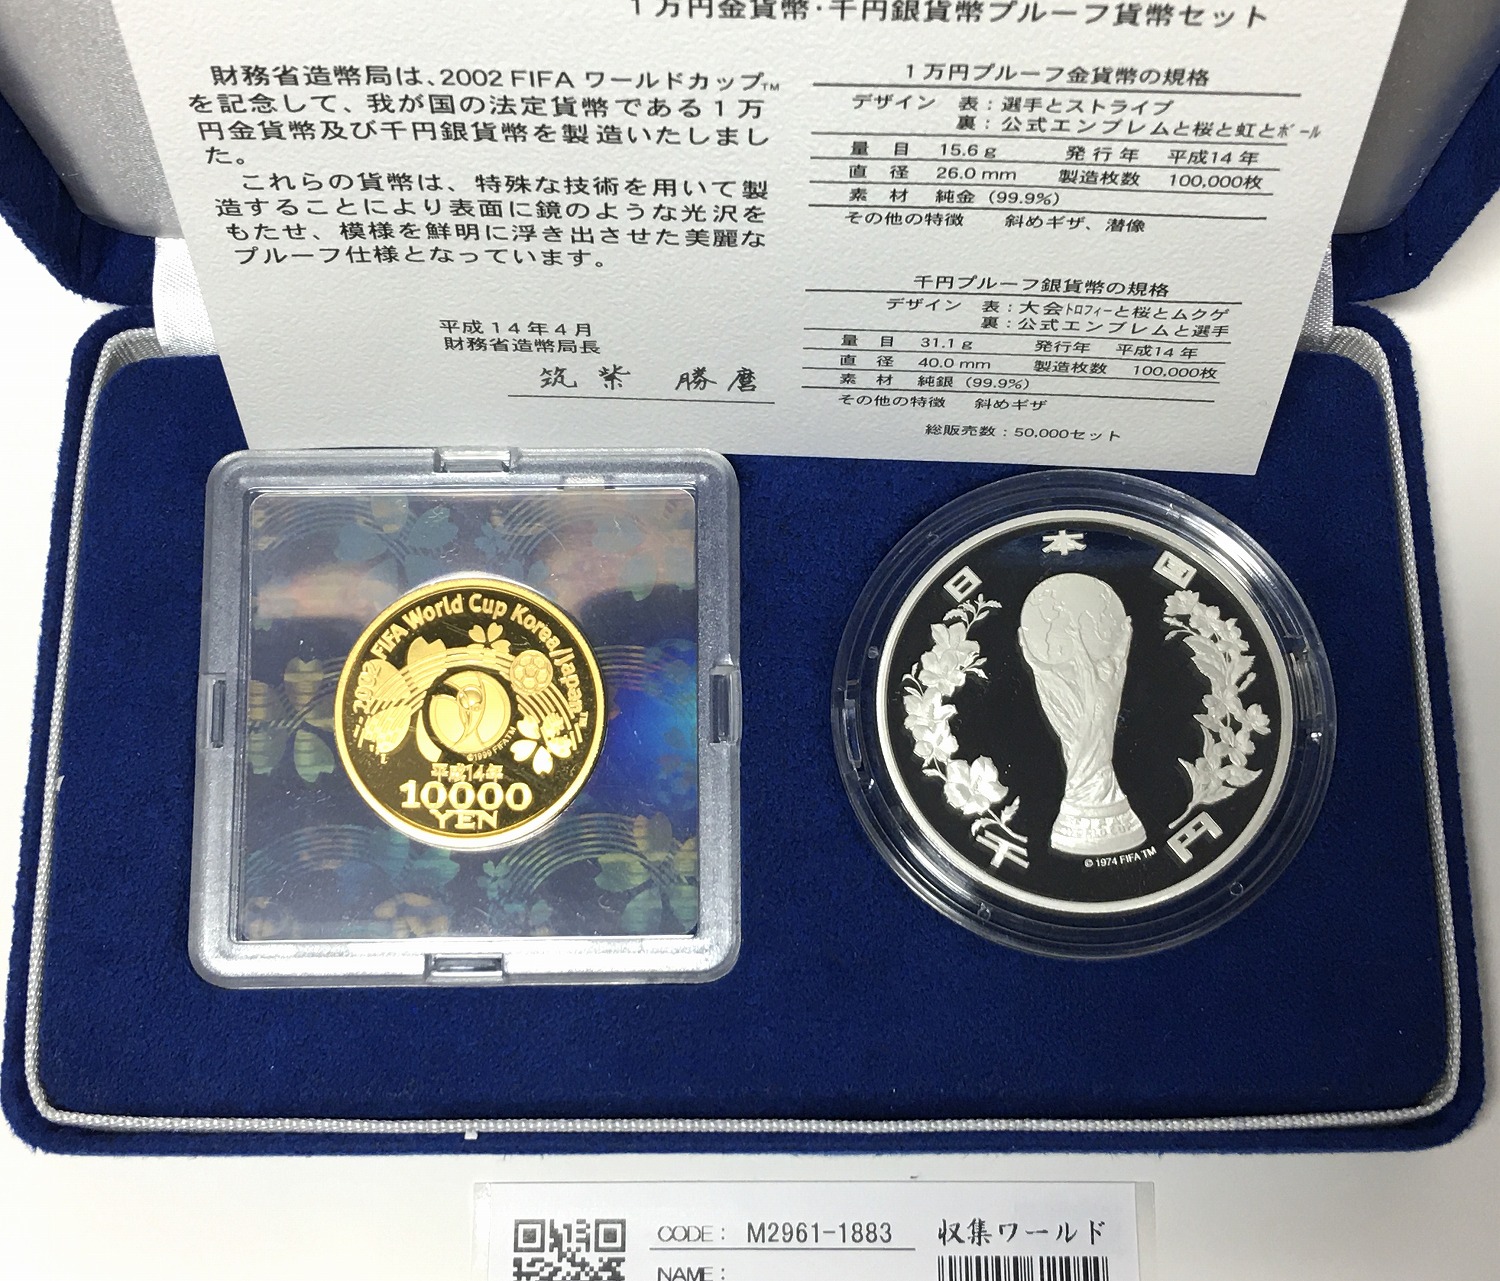 公式激安 2002年 FIFA 日韓ワールドカップ プルーフ銀貨